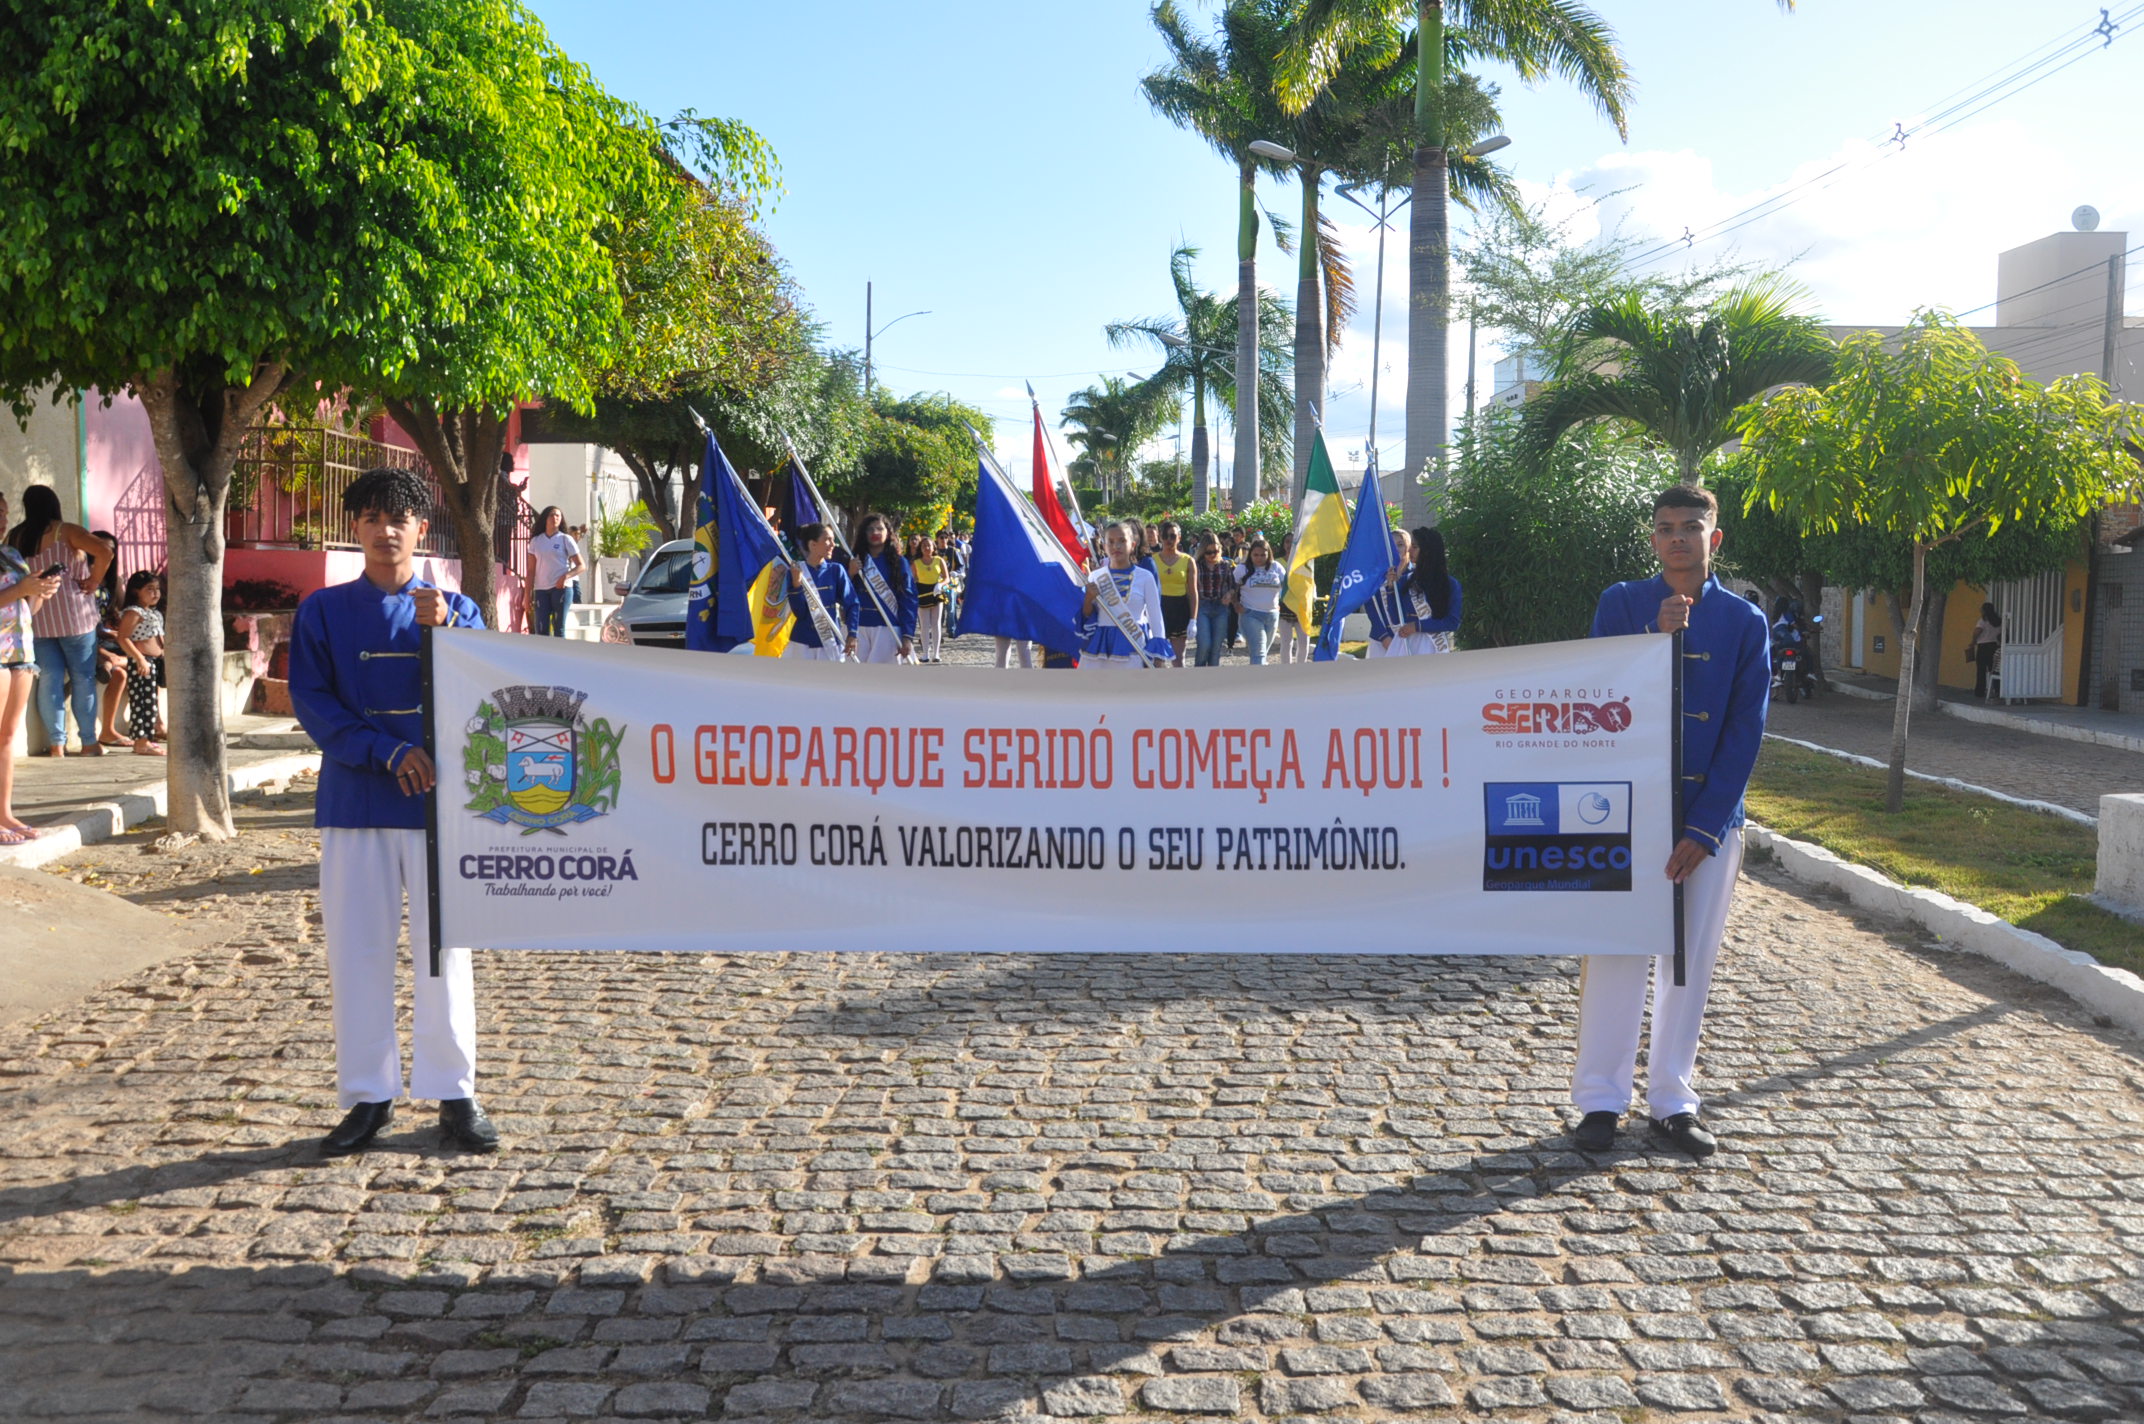 Geoparque Seridó foi destaque no desfile cívico em Cerro Corá-RN